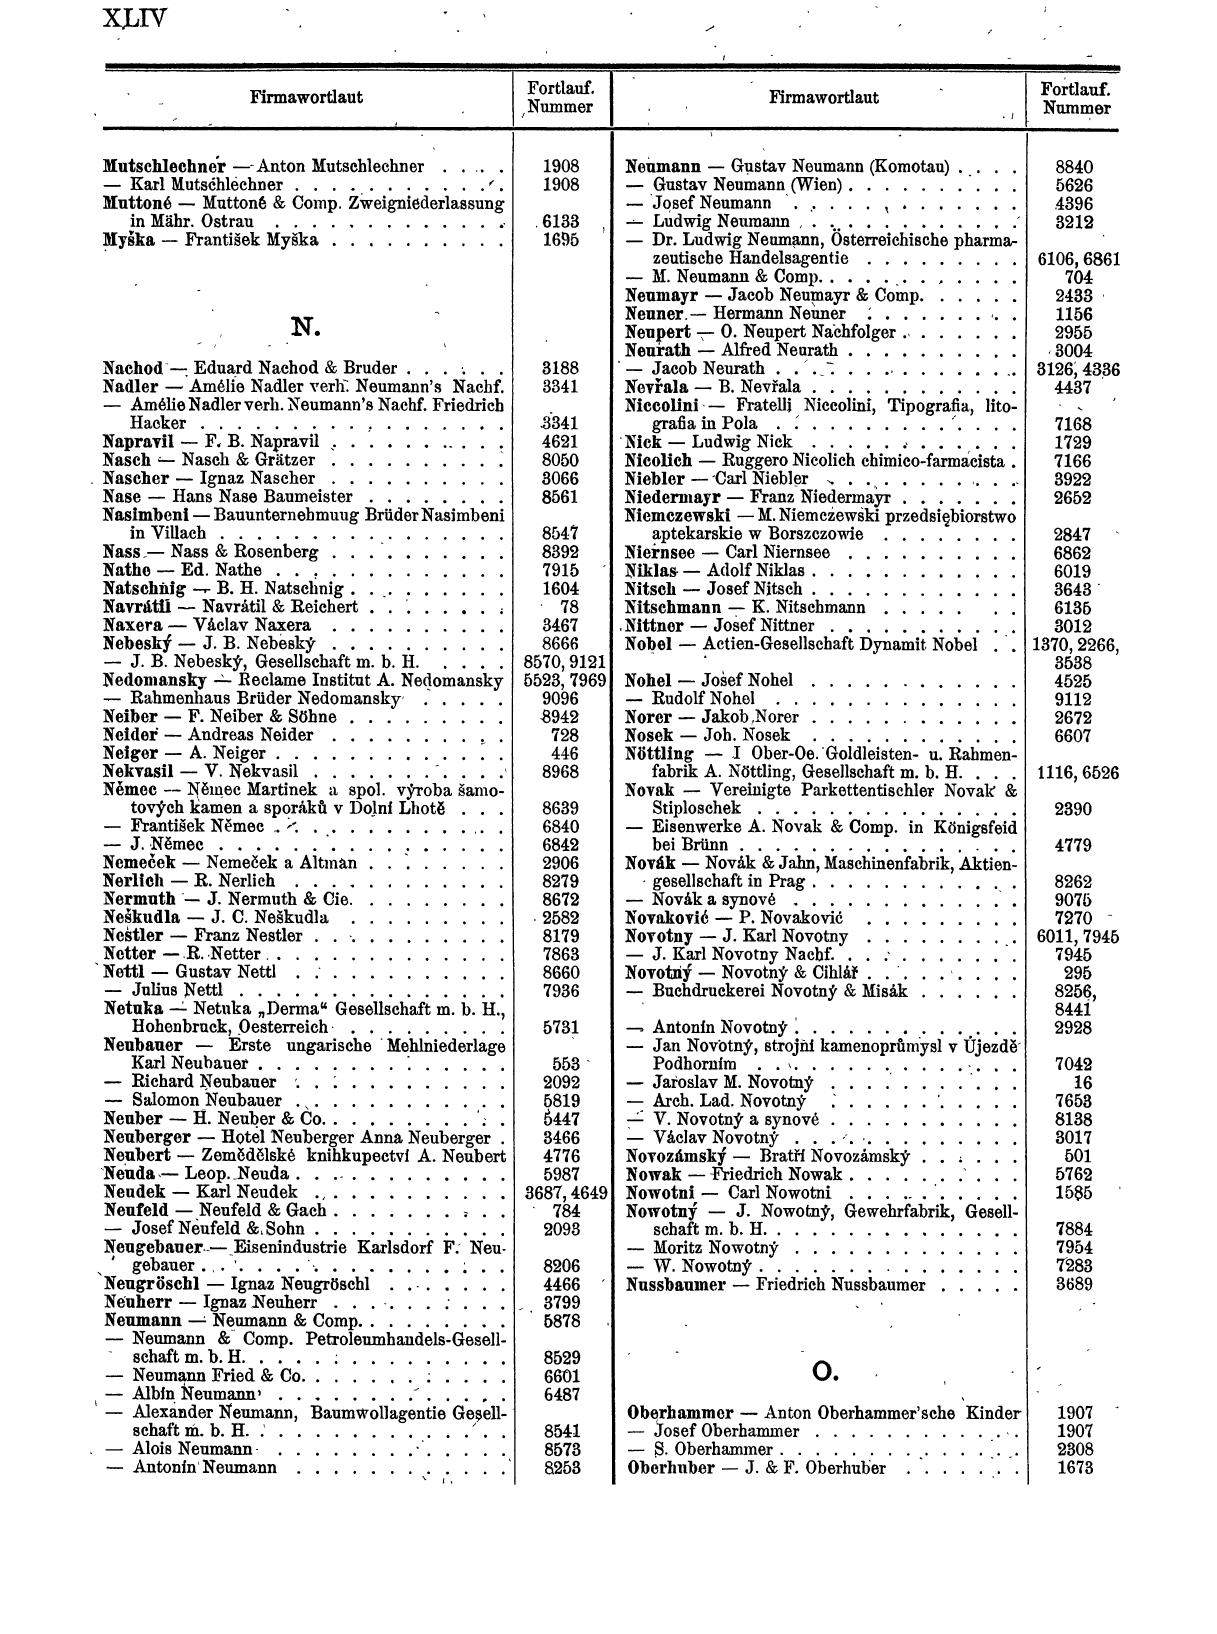 Zentralblatt für die Eintragungen in das Handelsregister 1913, Teil 1 - Seite 52